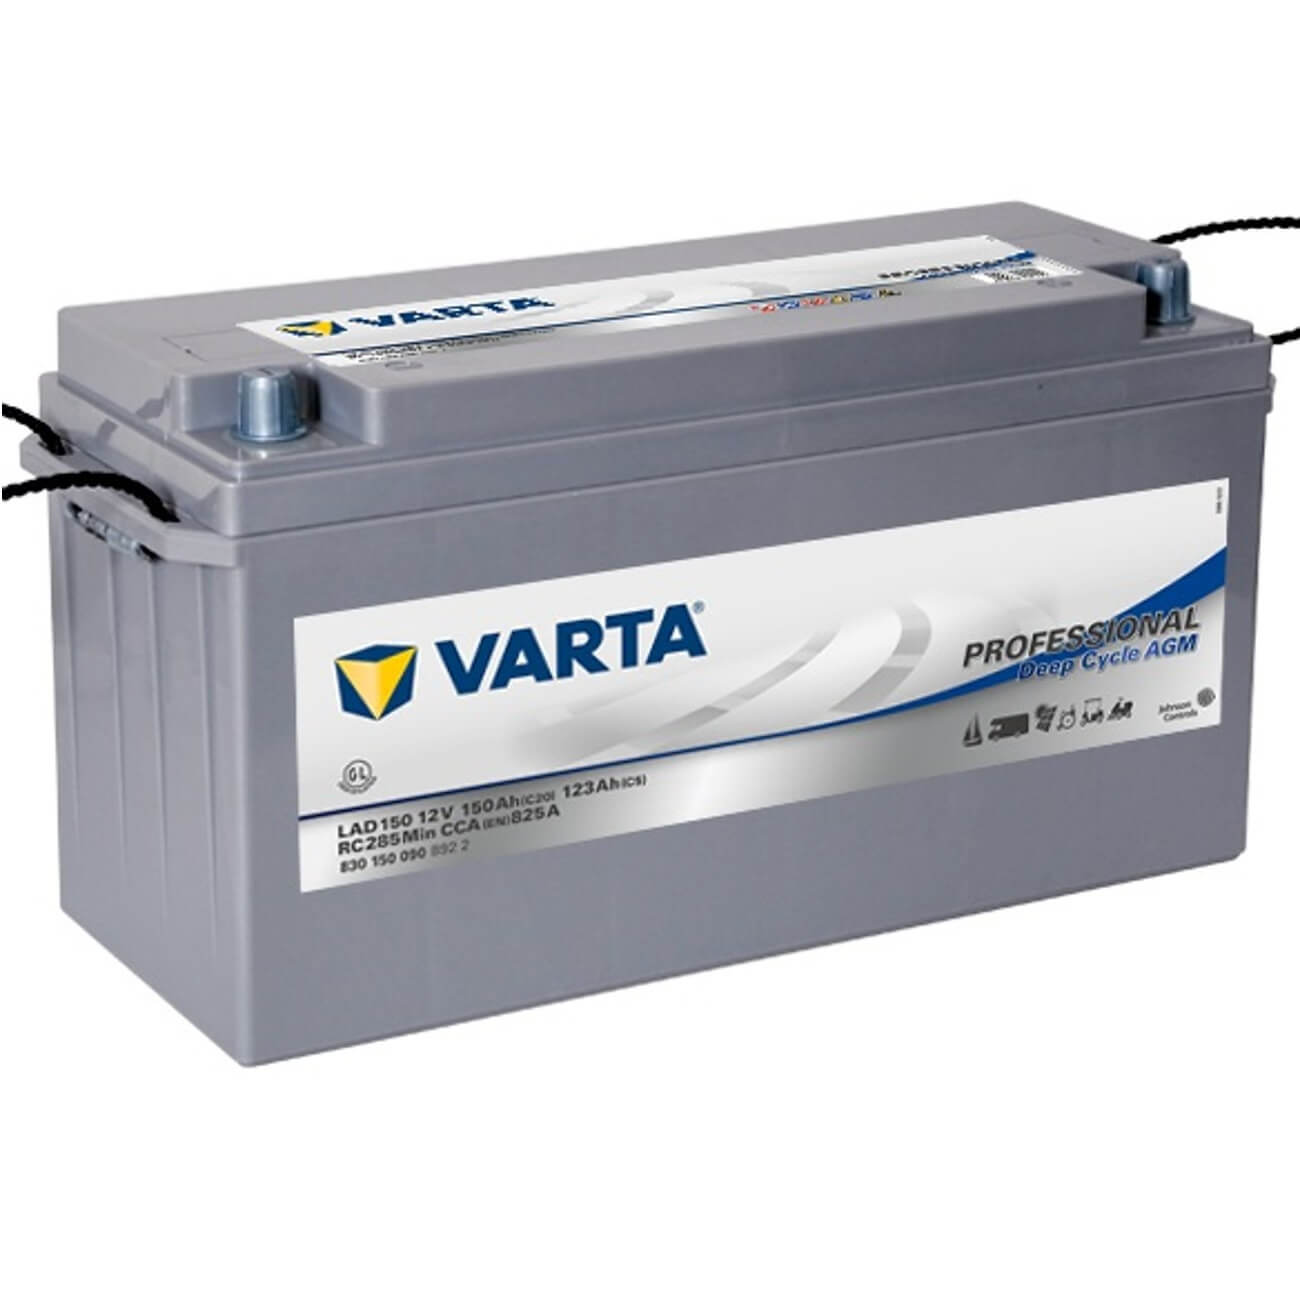 Varta LAD150 Professional DC AGM 12V 150Ah 825A/EN